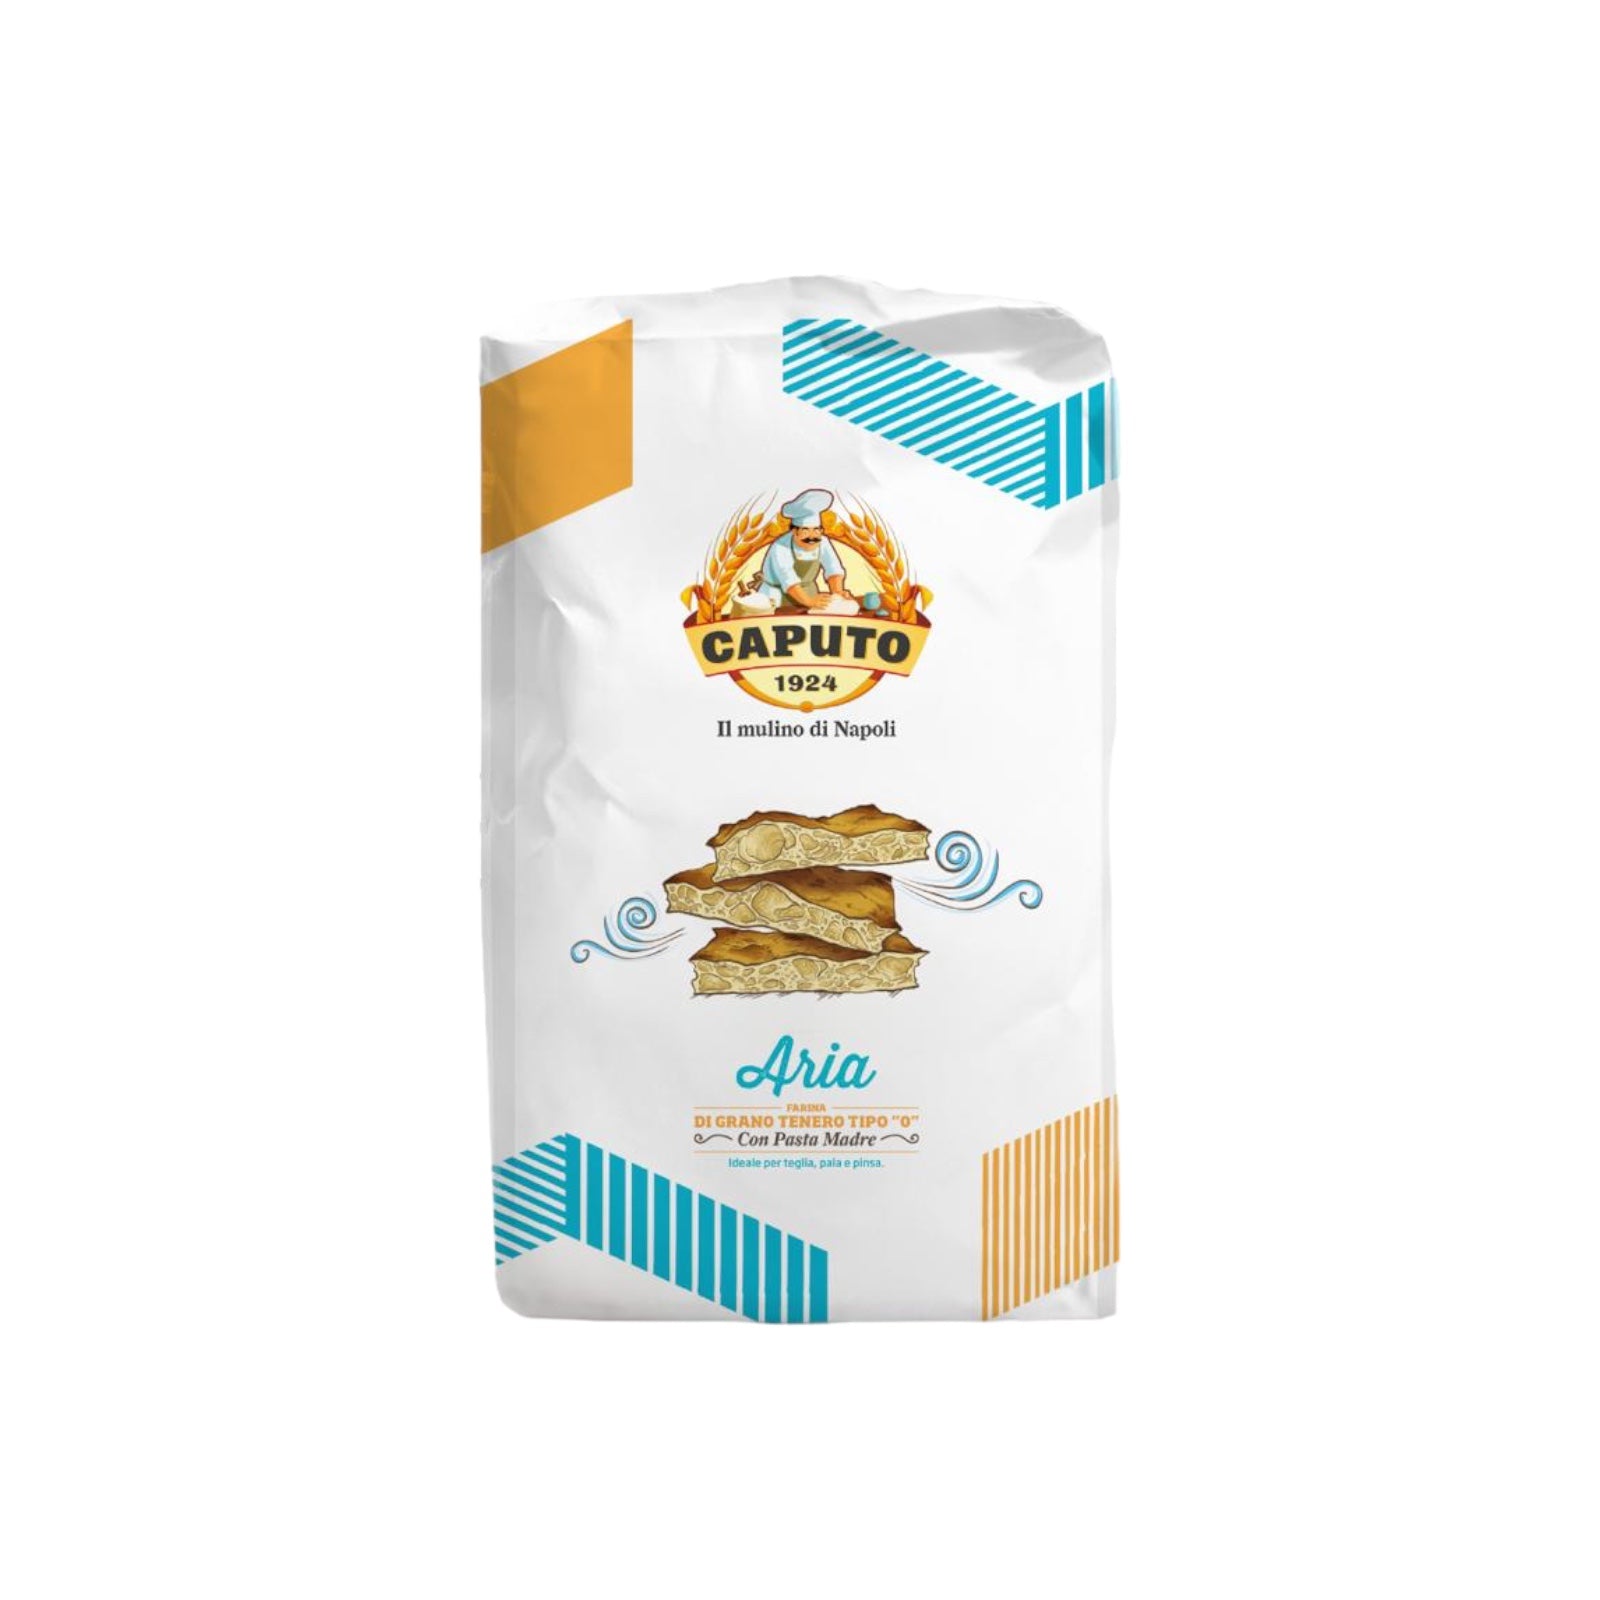 Caputo Aria Flour 2.2lb Type “0”